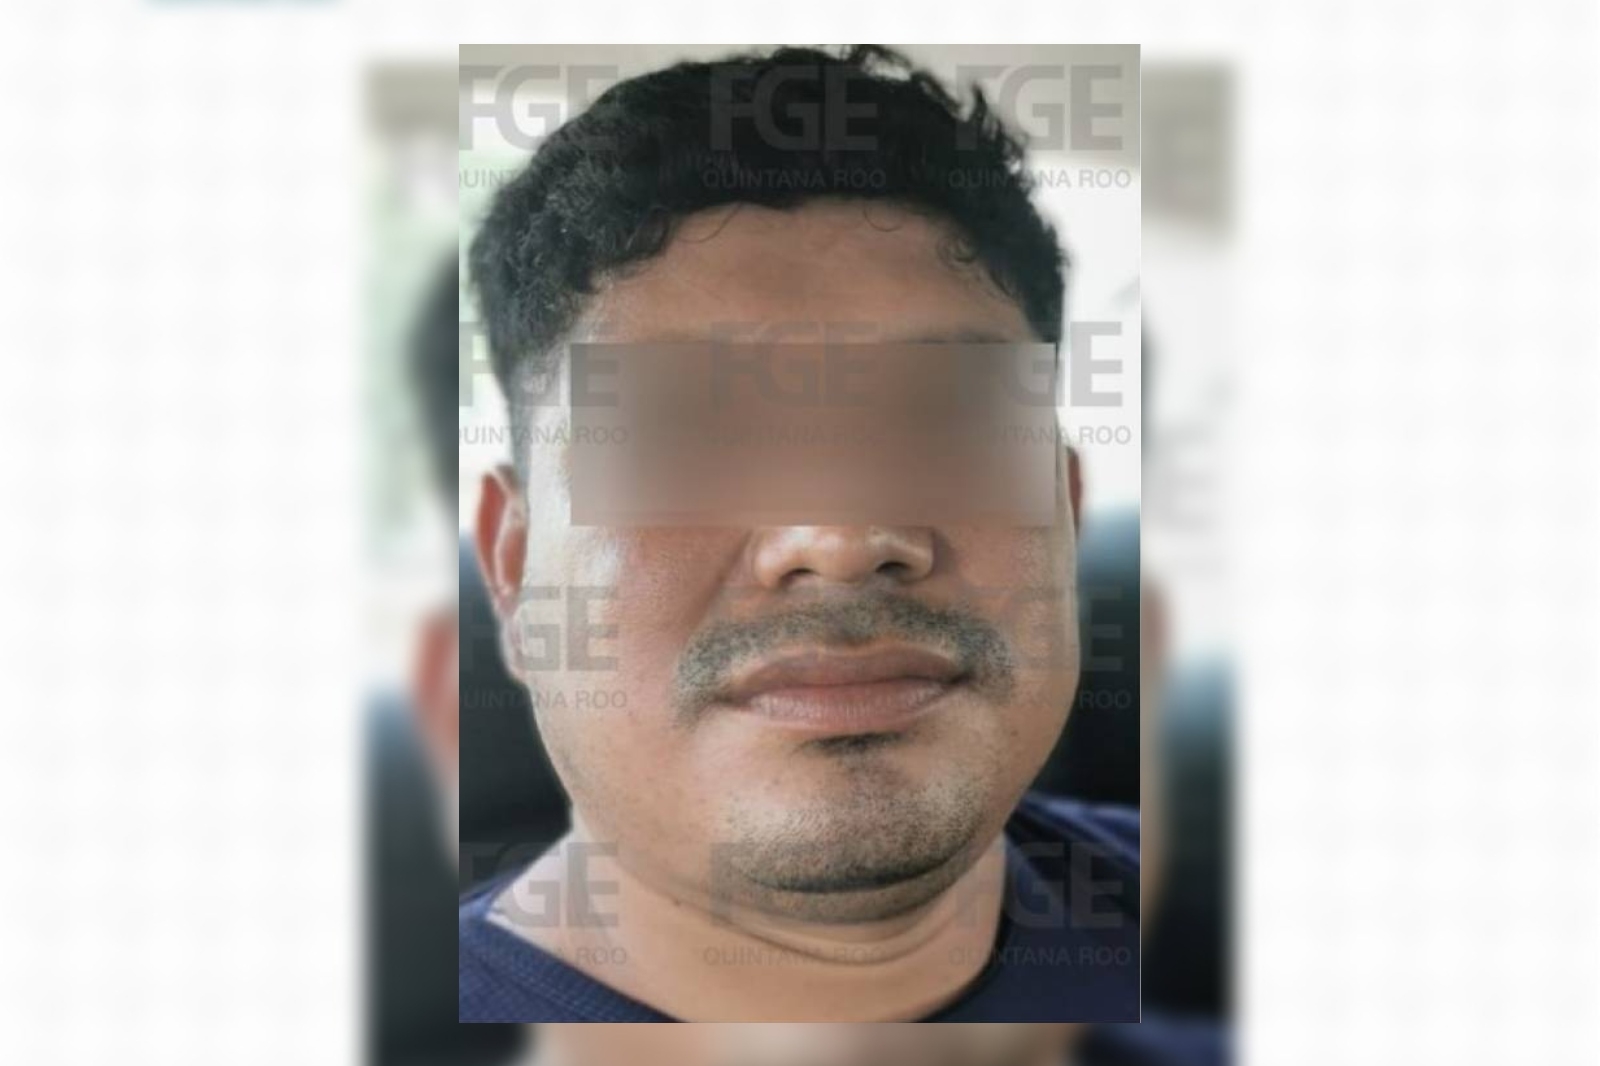 El hombre fue trasladado hacia Veracruz tras ser detenido en calles de Cancún esta semana por la Policía de Investigación